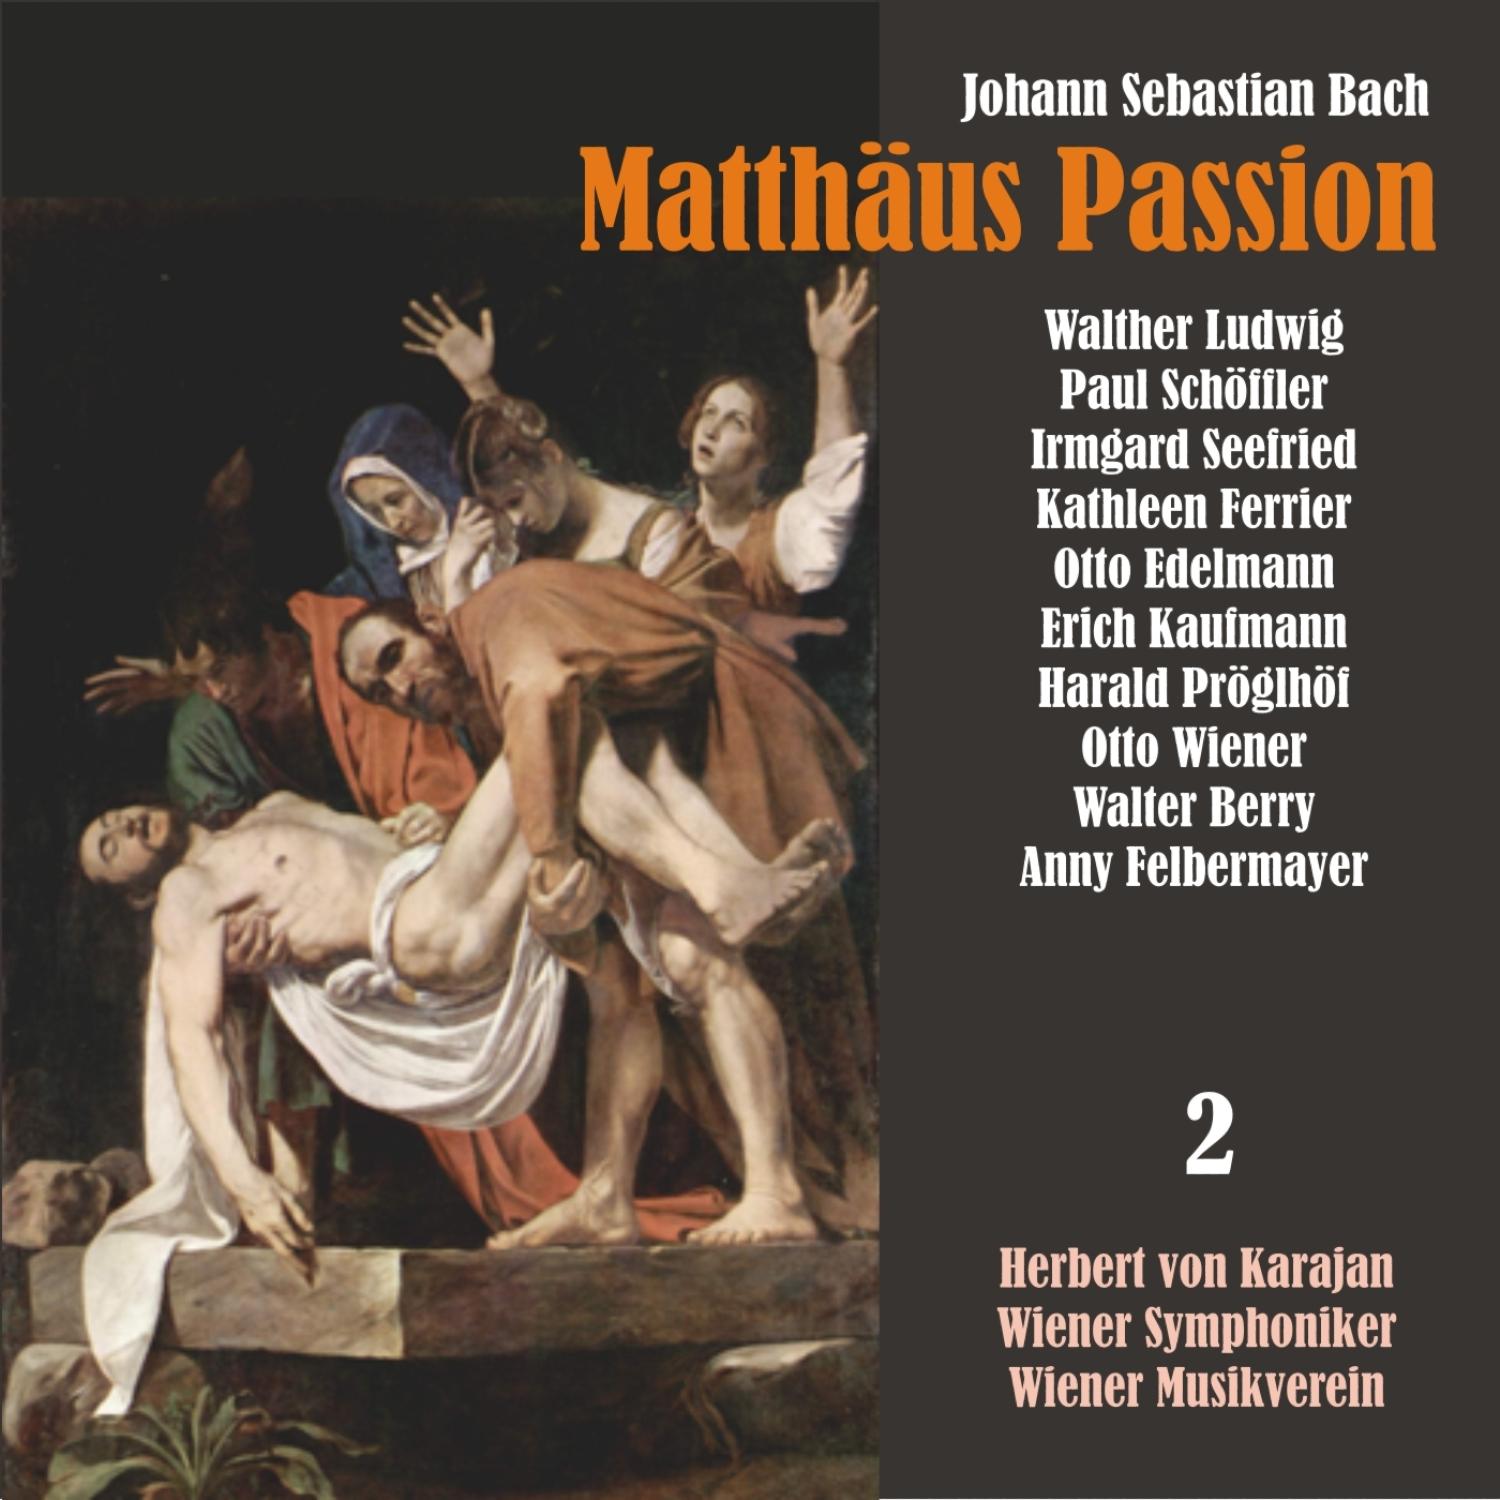 Matthäus Passion, BWV 244: "Mein Jesus schweigt"